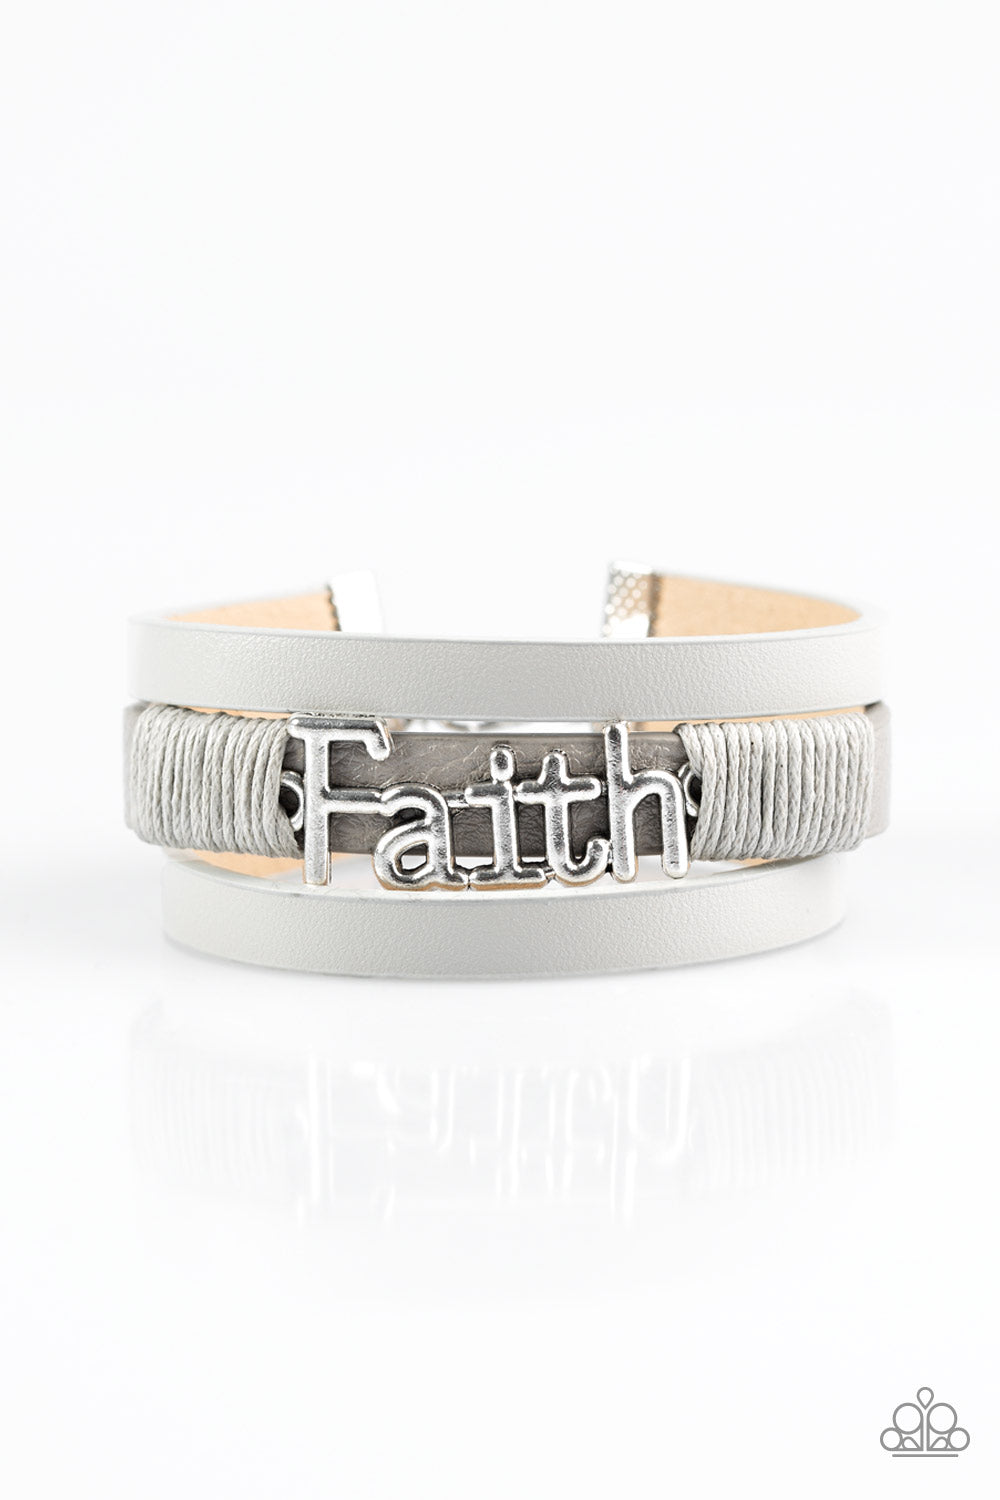 An Act Of Faith - Silver wrap bracelet